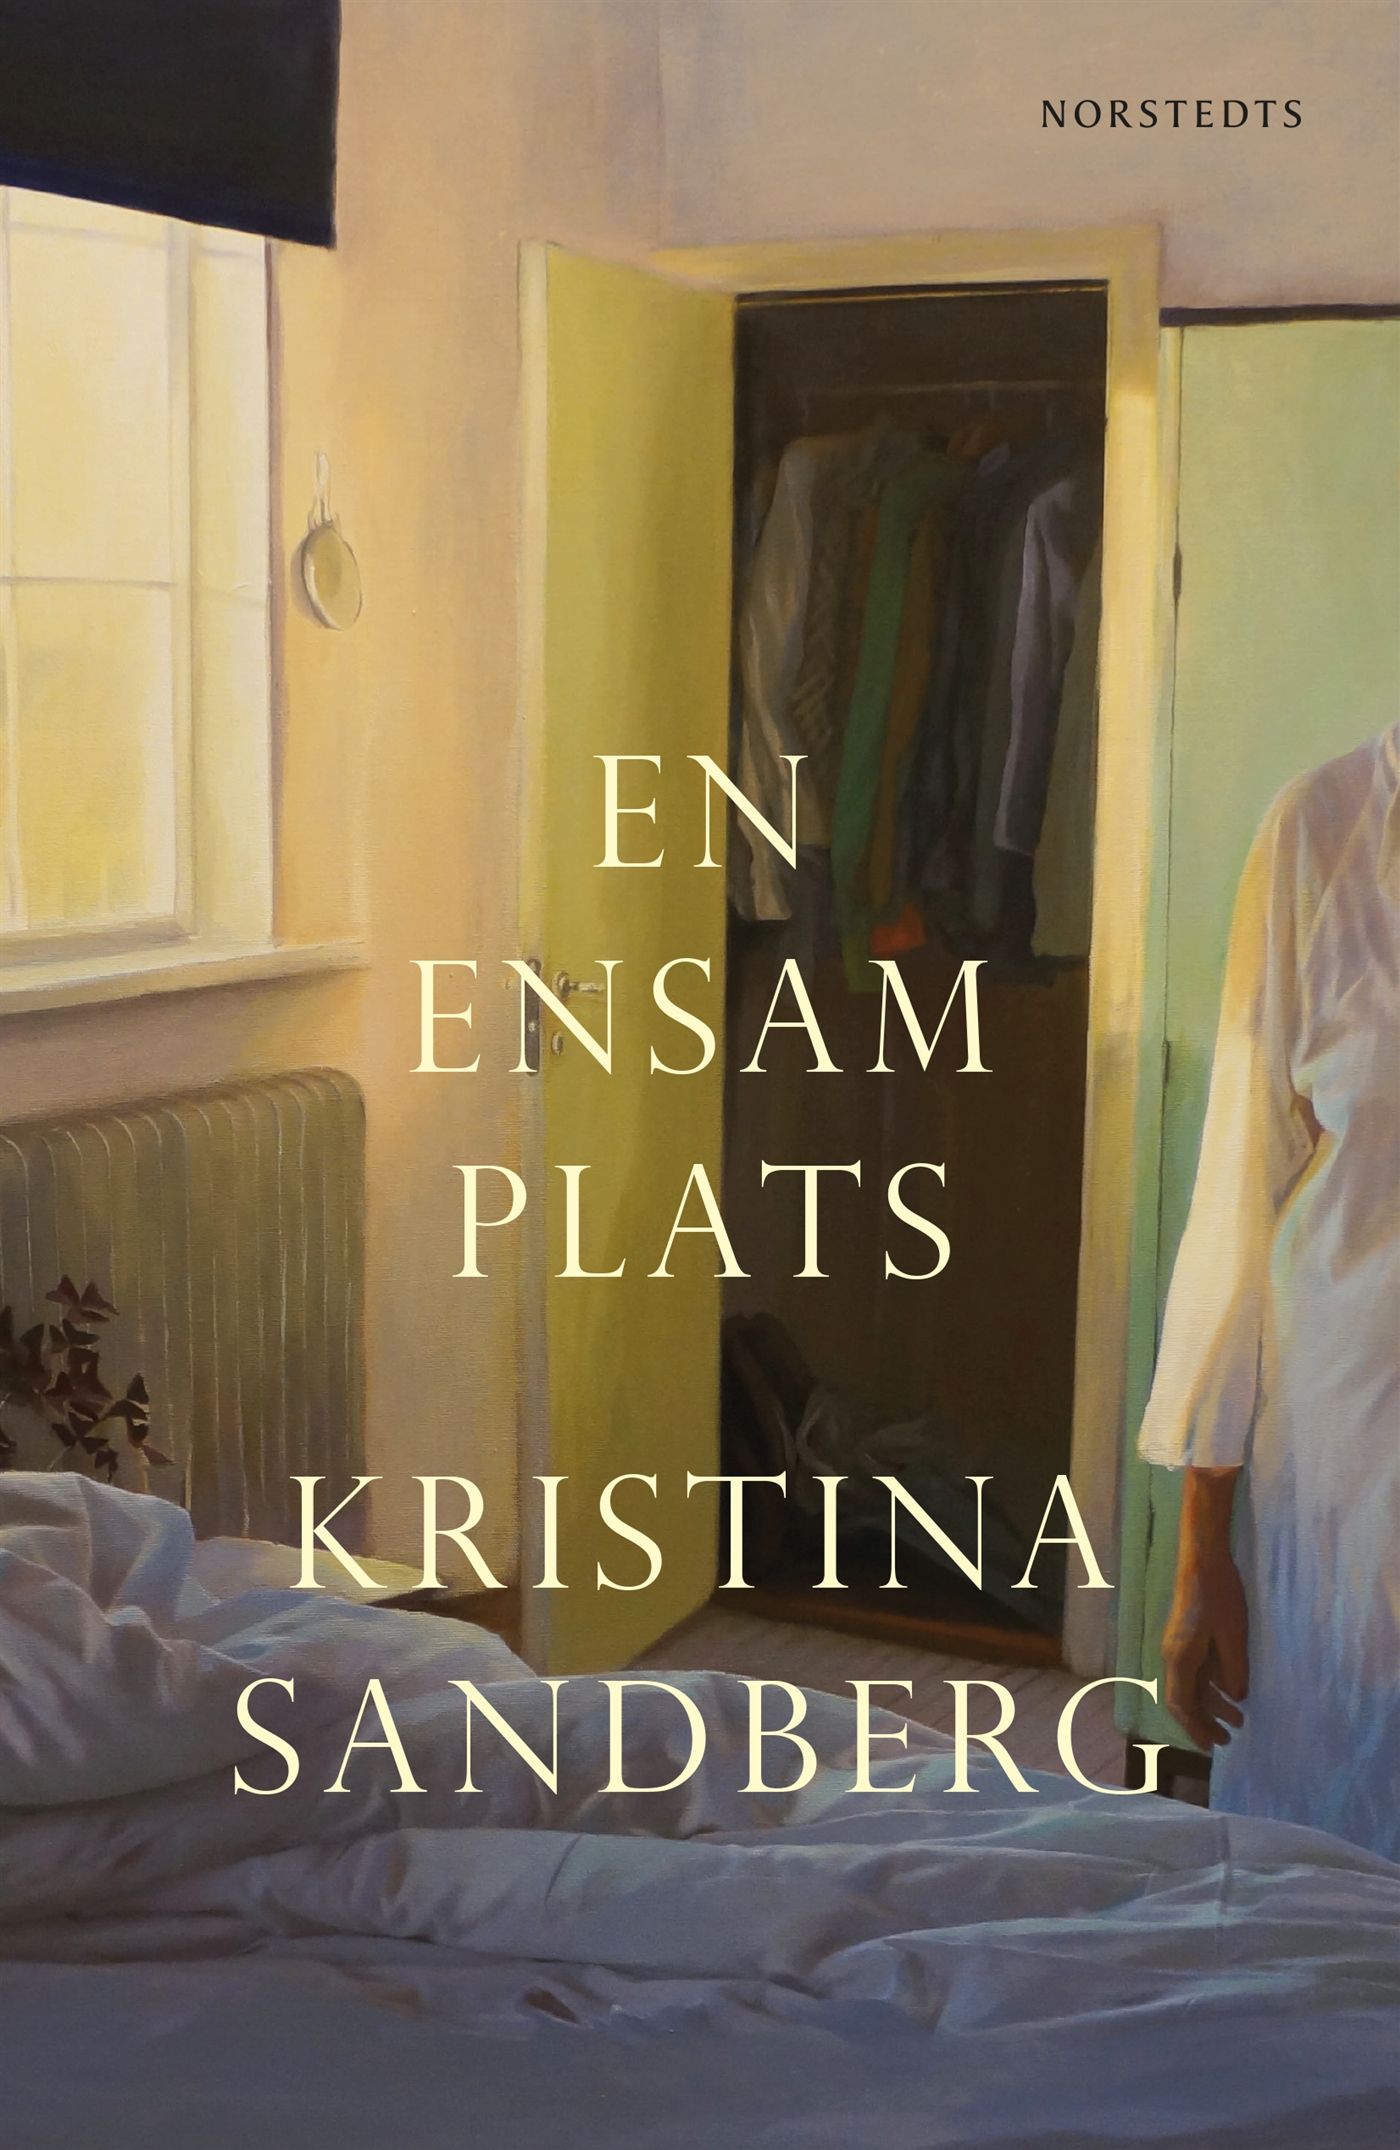 En ensam plats, e-bok av Kristina Sandberg